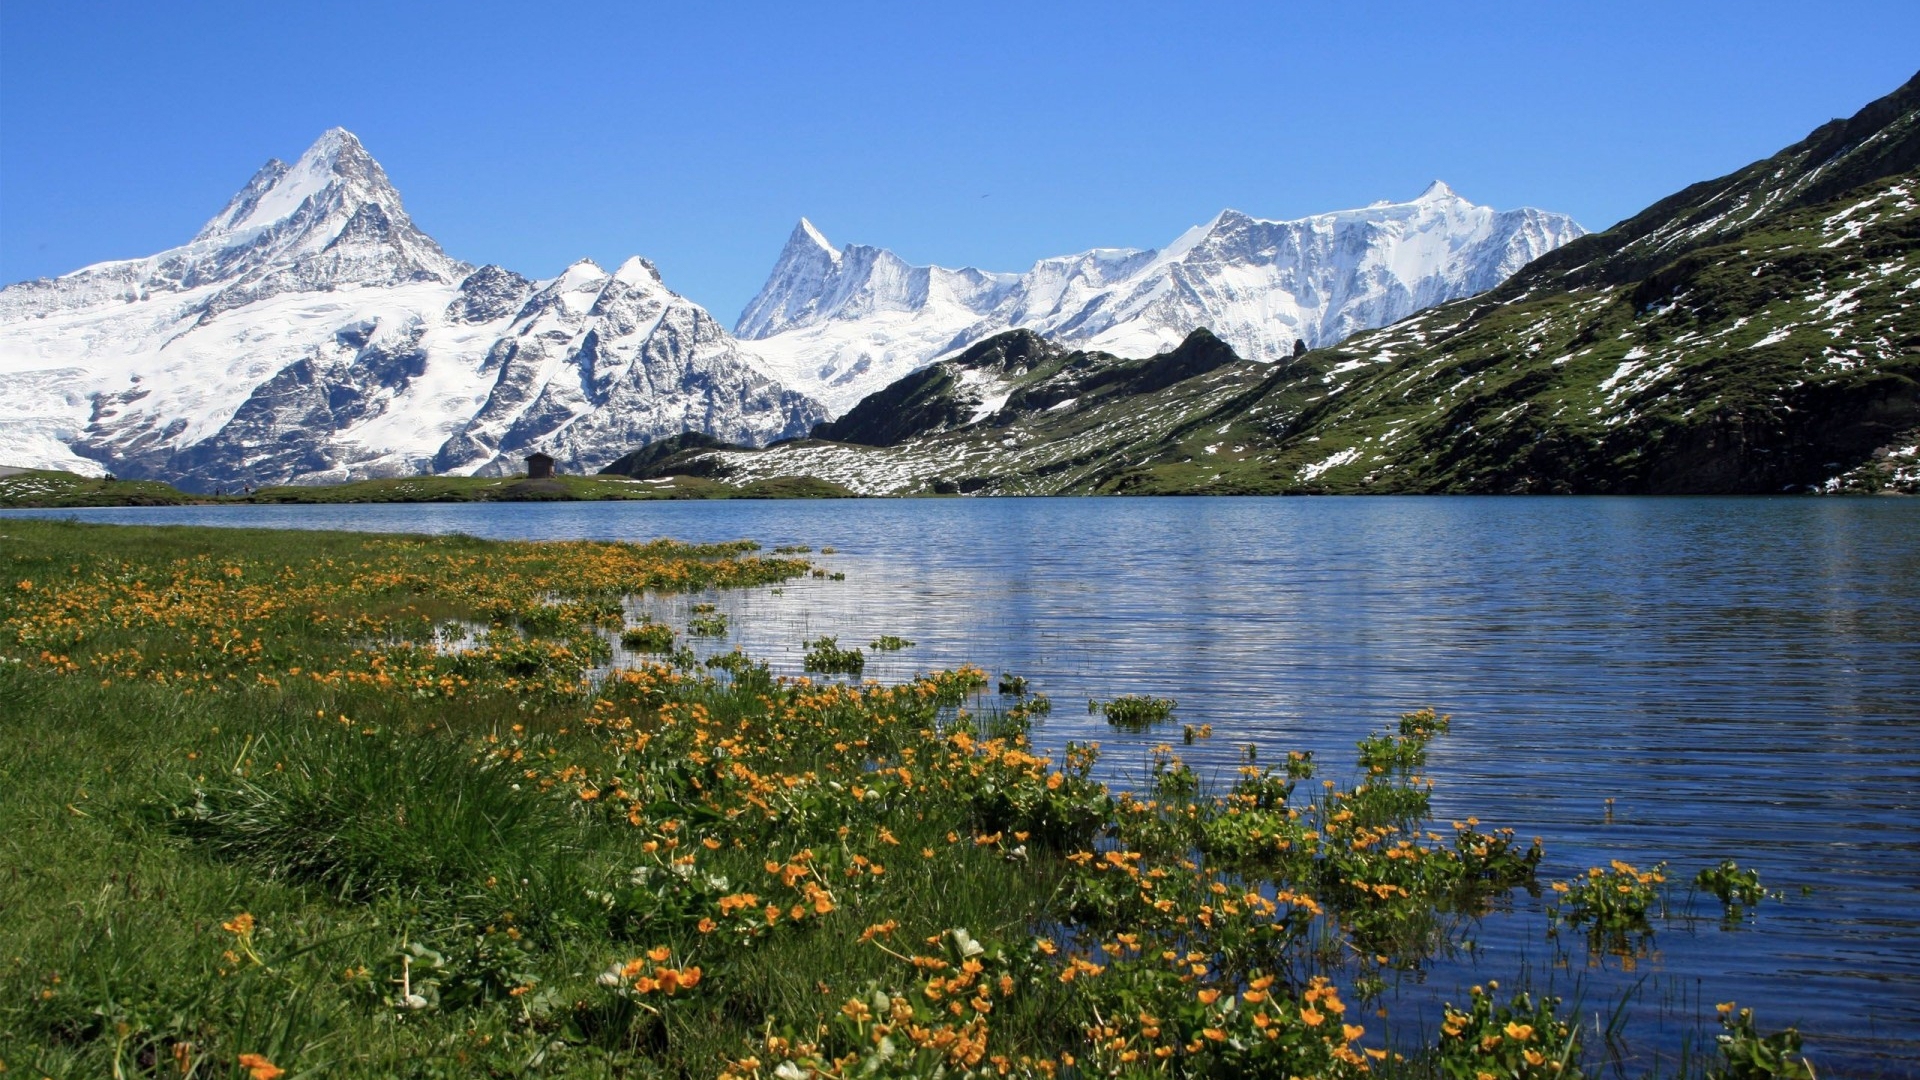 استوک طبیعت بکر دریاچه و گل های زیبای اطراف آن با کوه های برفی